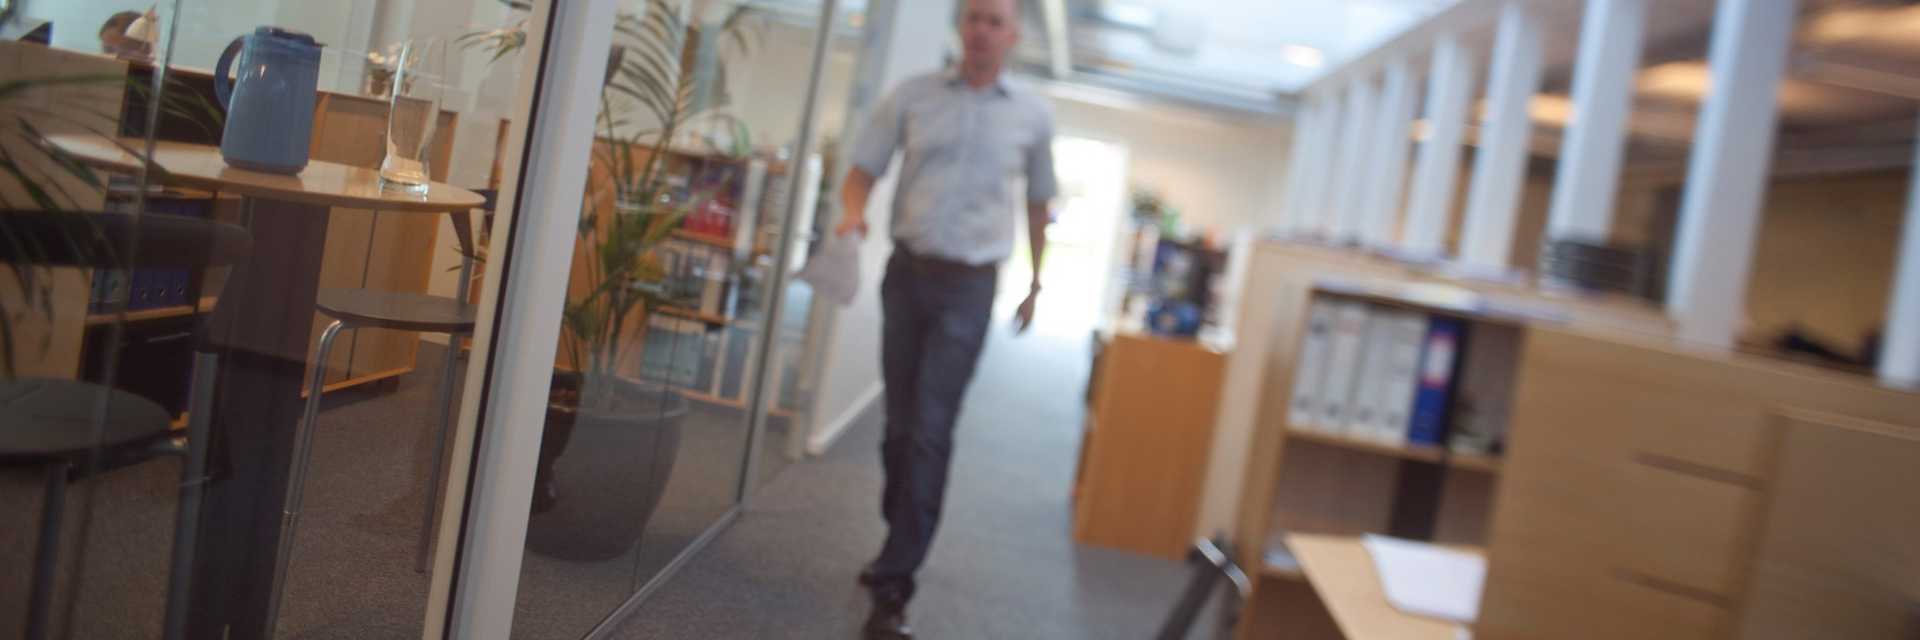 En mand går på gangen i en kontormiljø